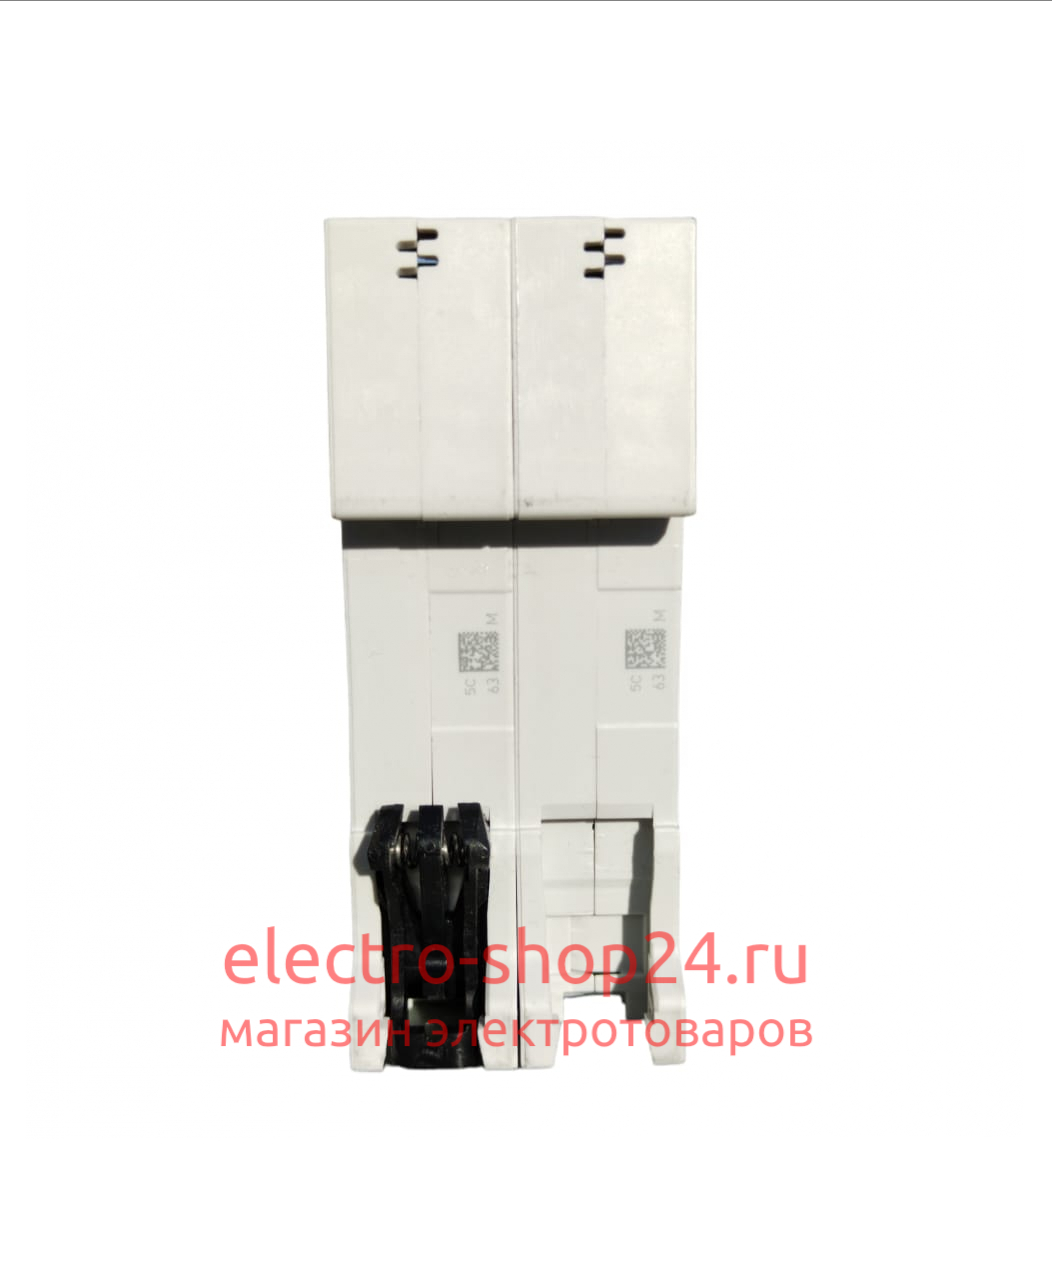 S202 C32 Автоматический выключатель 2-полюсный 32А 6кА (хар-ка C) ABB 2CDS252001R0324 2CDS252001R0324 - магазин электротехники Electroshop